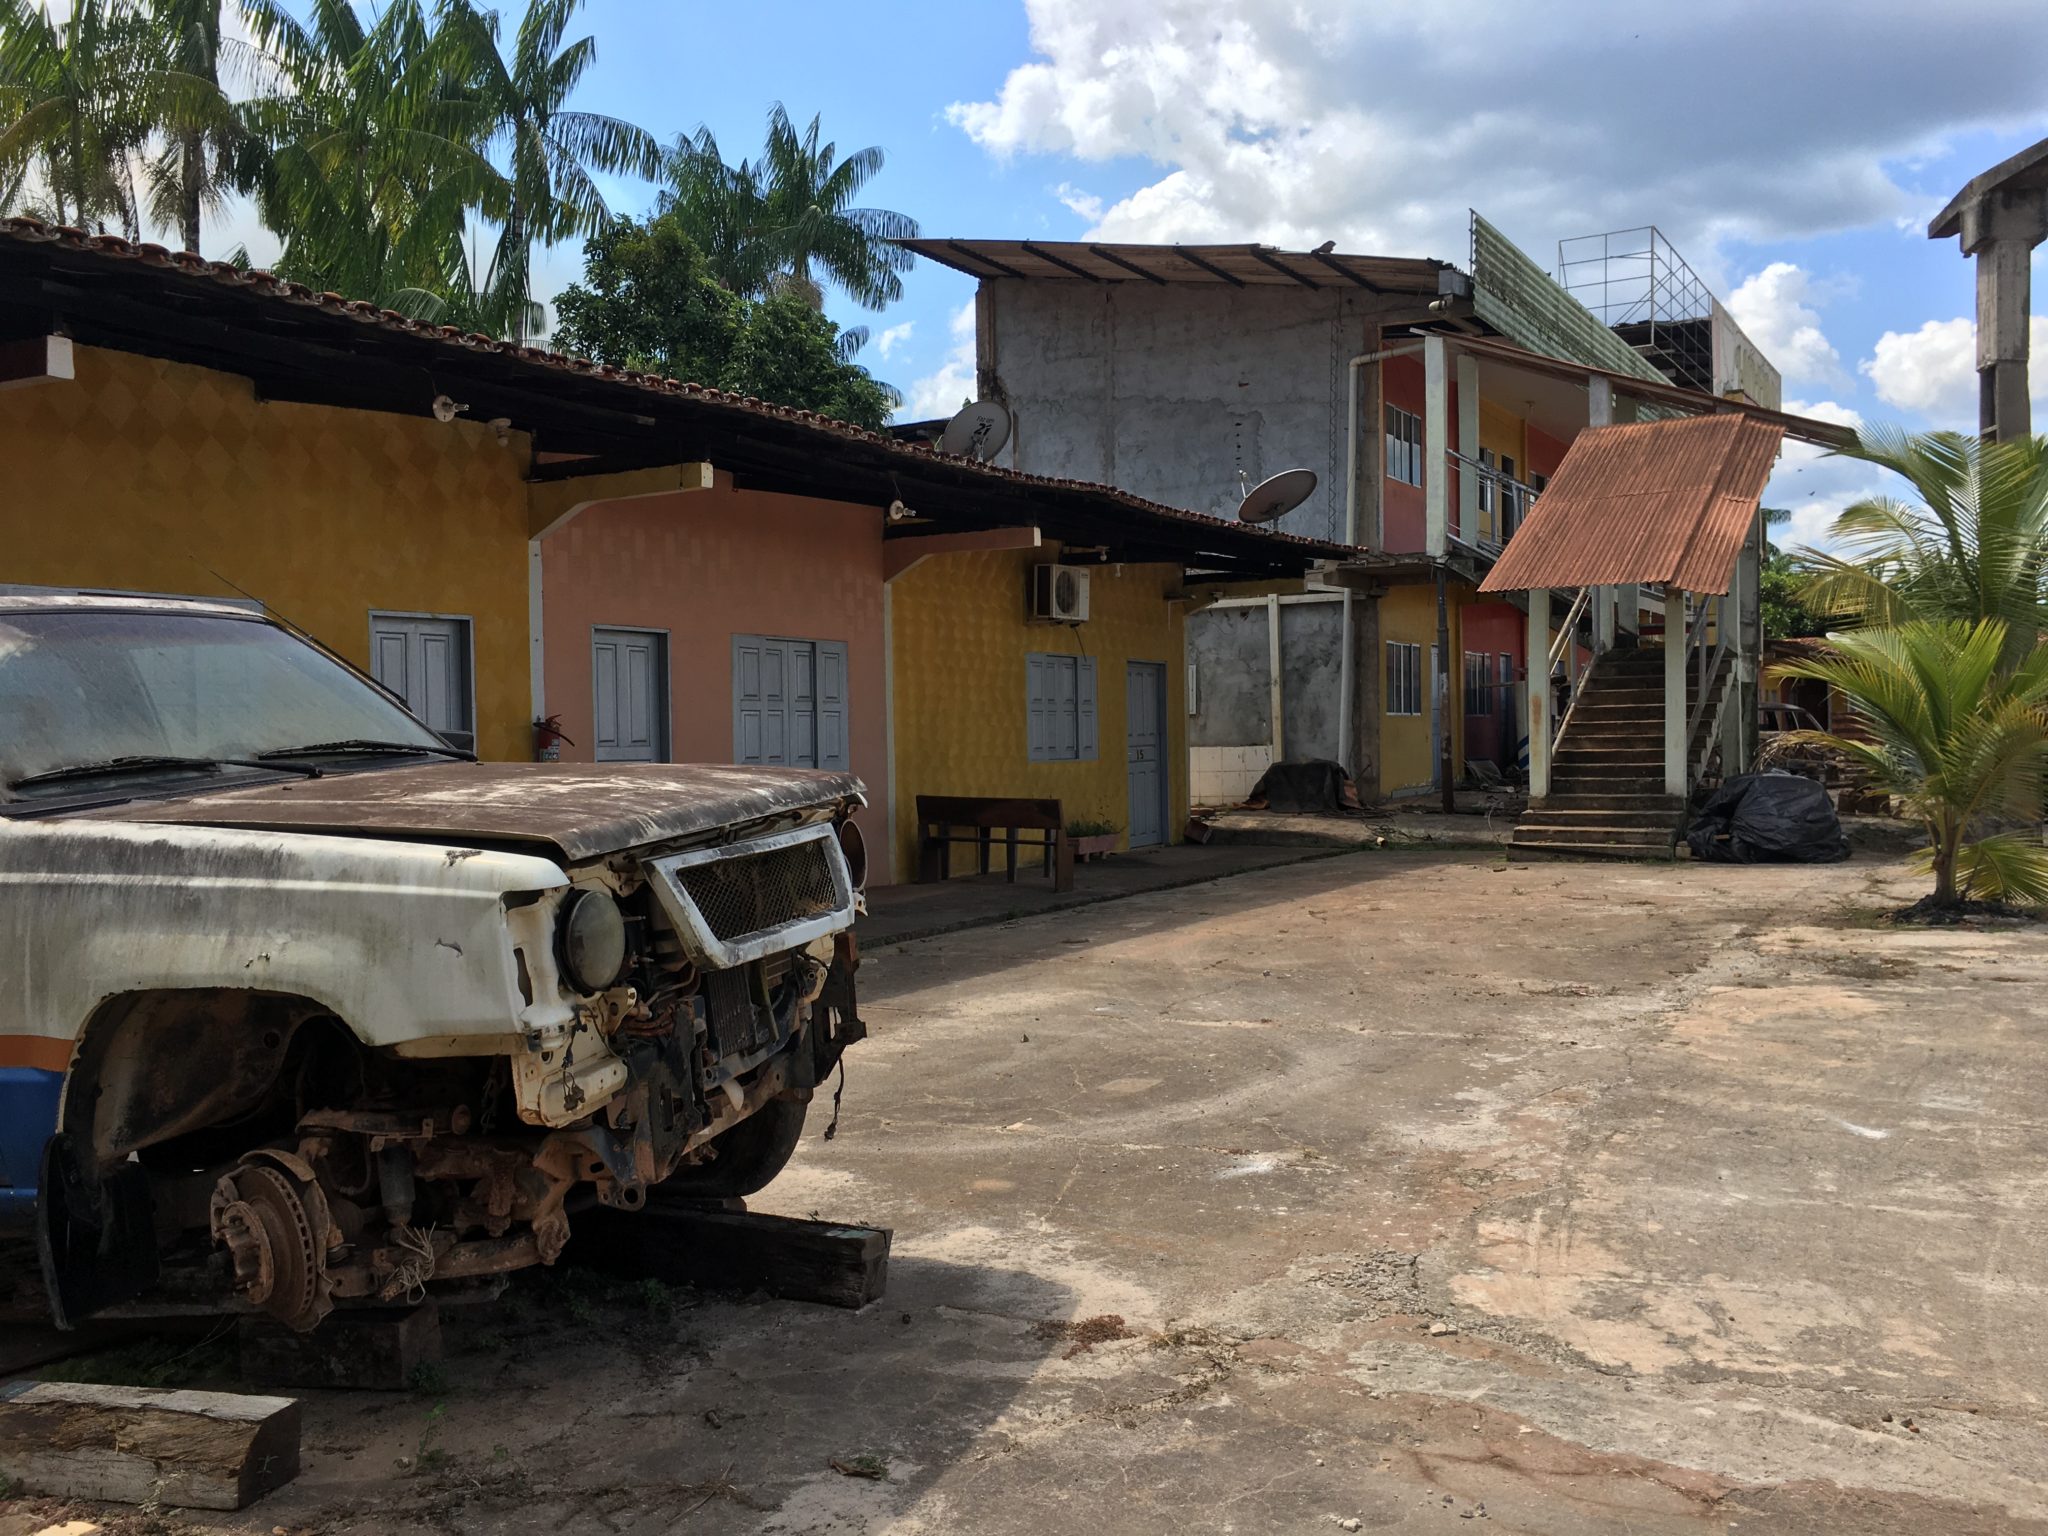 Hotel erguido durante o boom econômico da cidade virou garagem para carros abandonados. Dyepeson Martins/Agência Pública